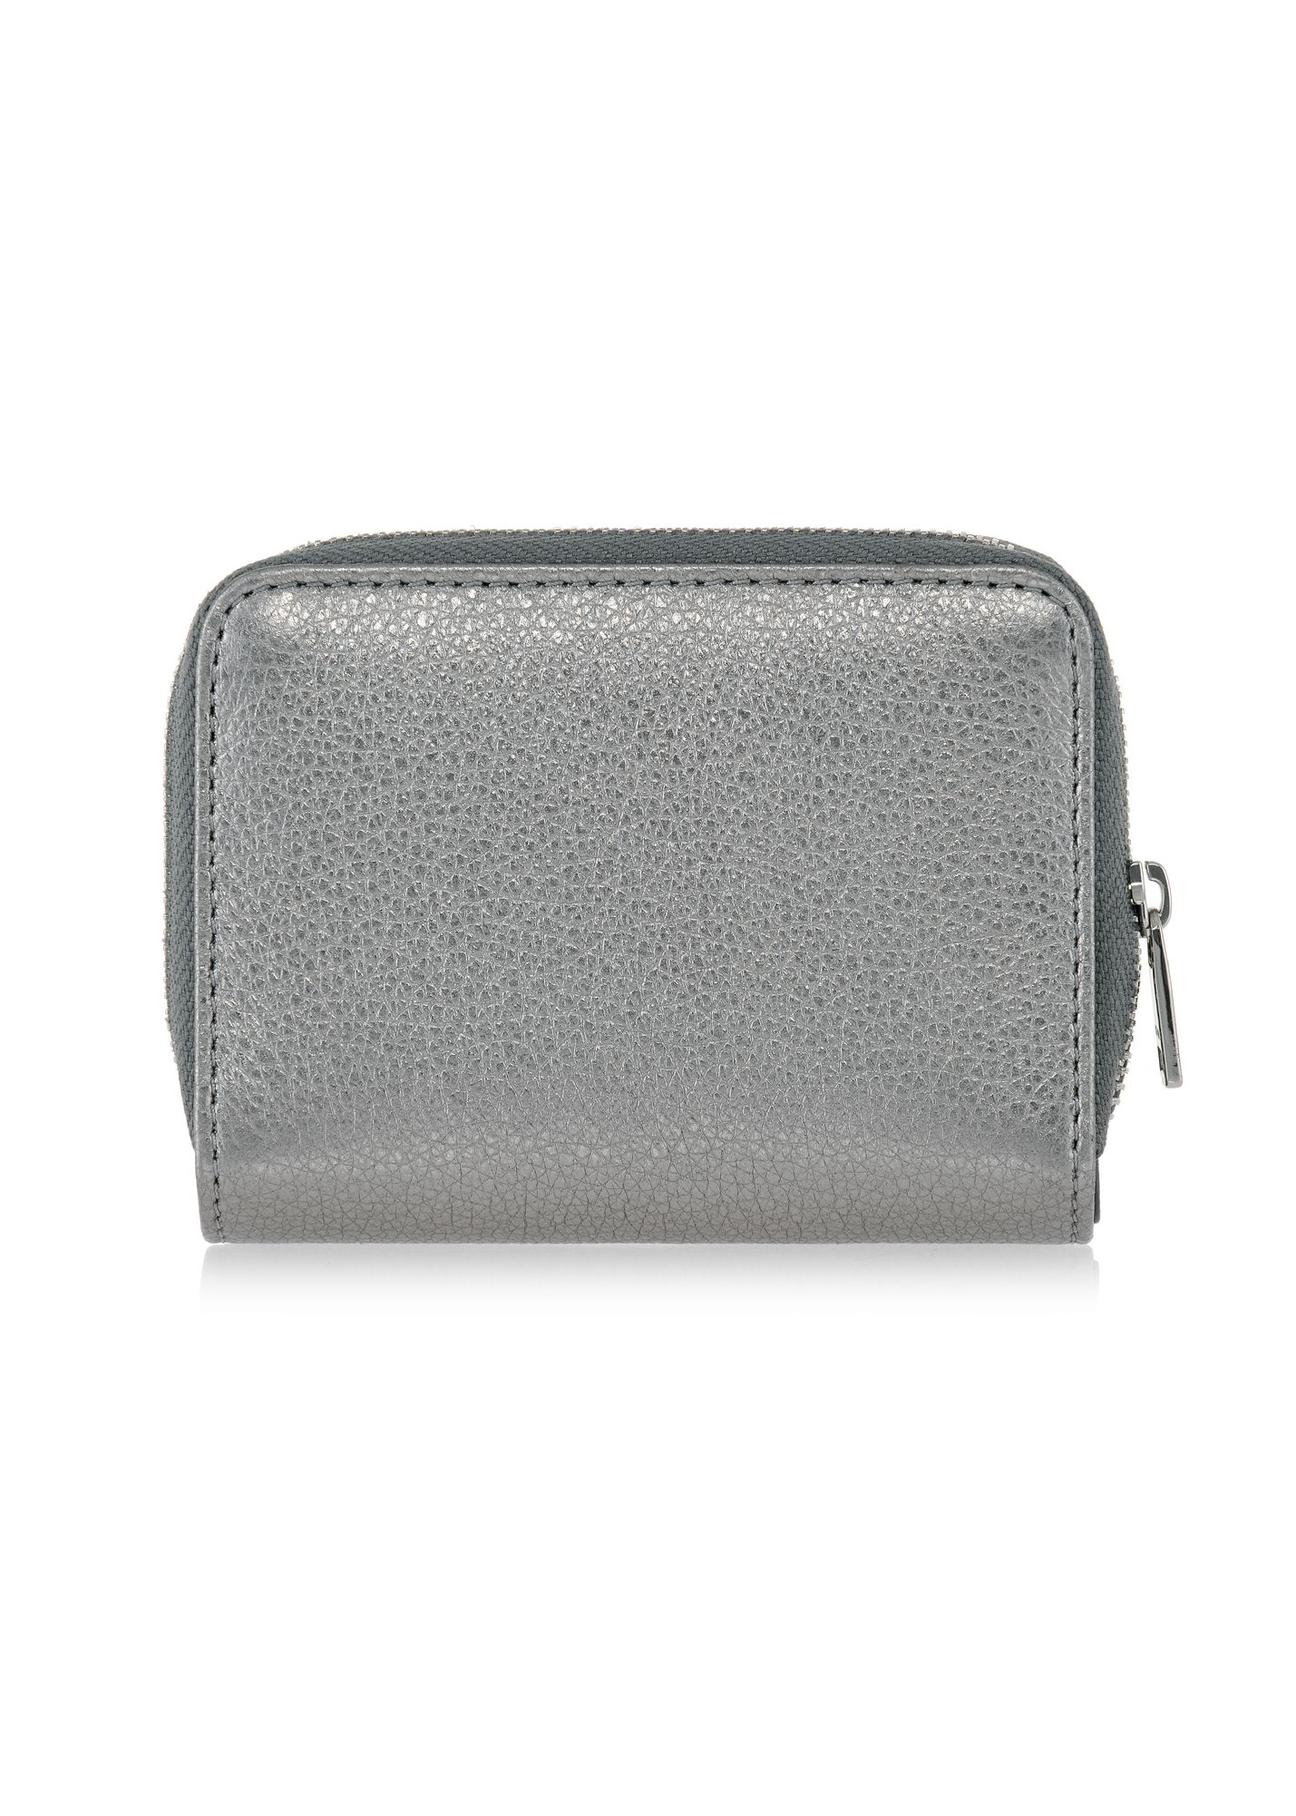 Mały srebrny portfel damski PORES-0837-92(W23)